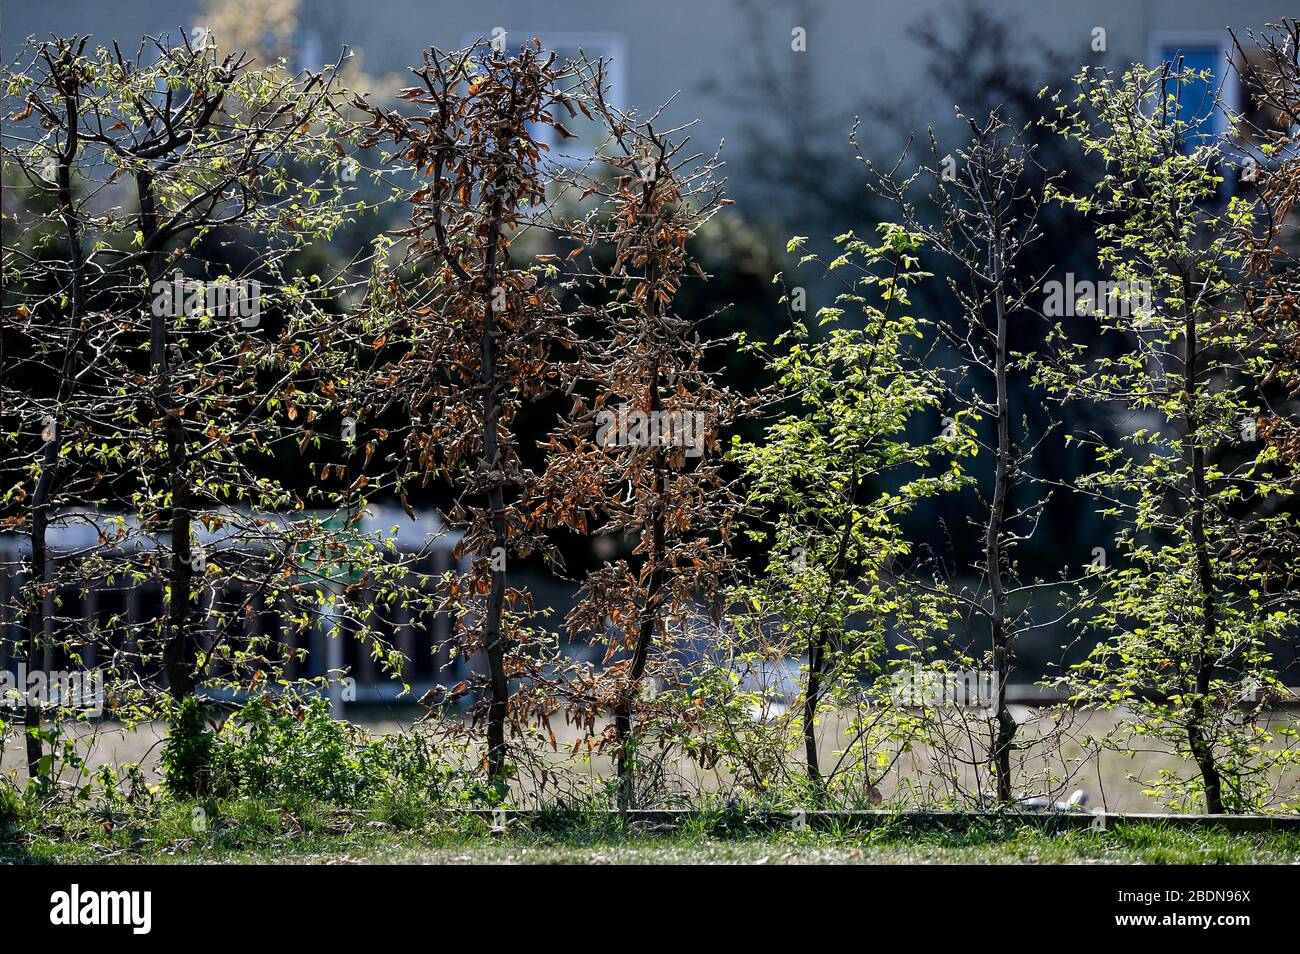 08 avril 2020, Berlin: Les premières pousses avec de nouvelles feuilles peuvent être vues sur une couverture. Bien que certaines usines soient déjà en train de sprouter, d'autres ne sont pas encore visibles. Photo: Jens Kalaene/dpa-Zentralbild/ZB Banque D'Images